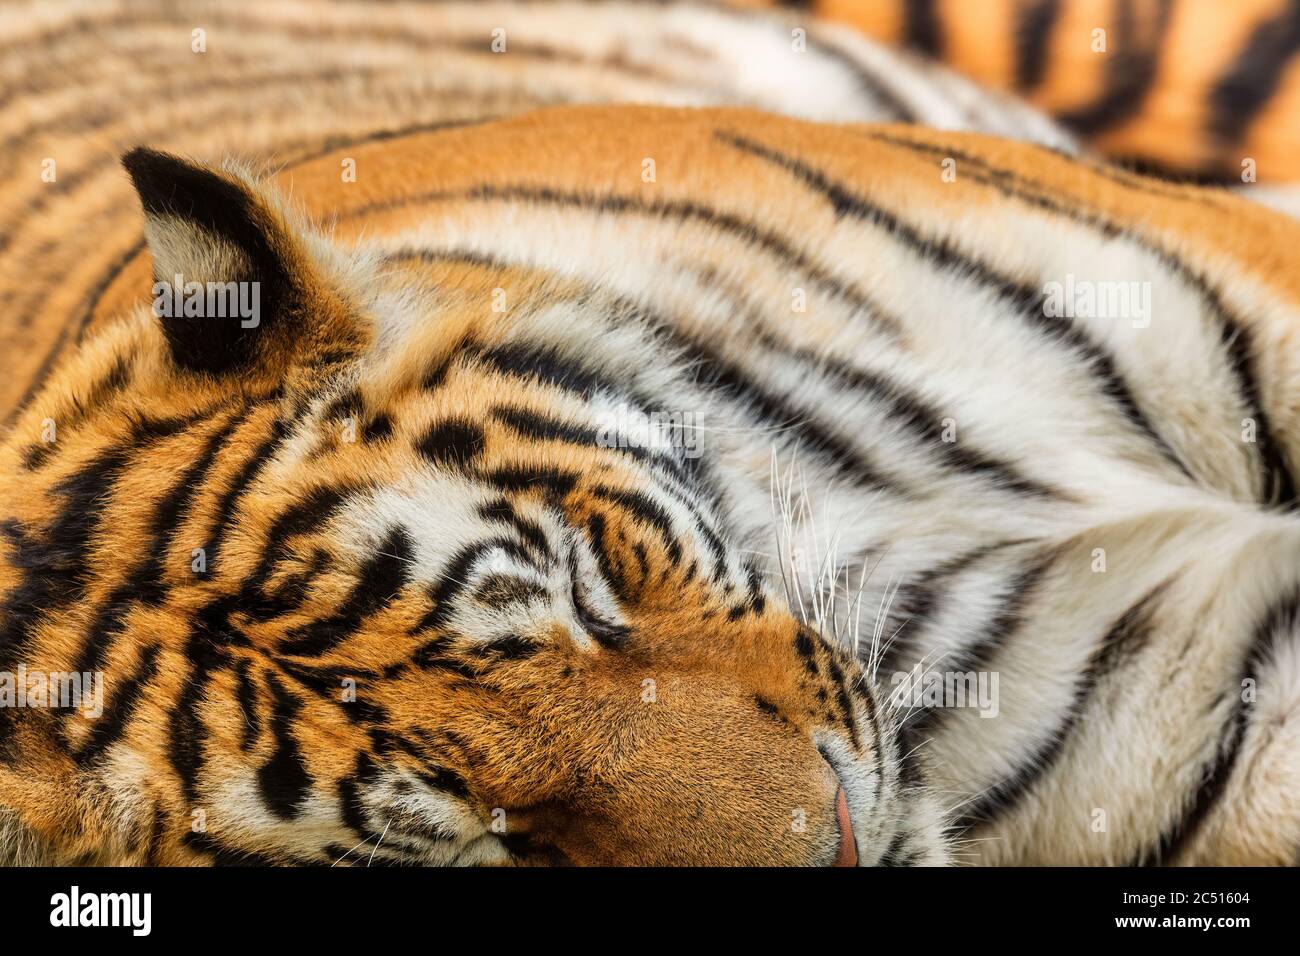 Sibirischer Tiger - Panthera tigris, schöne große Katze aus asiatischen Wäldern und Wäldern, Russland. Stockfoto